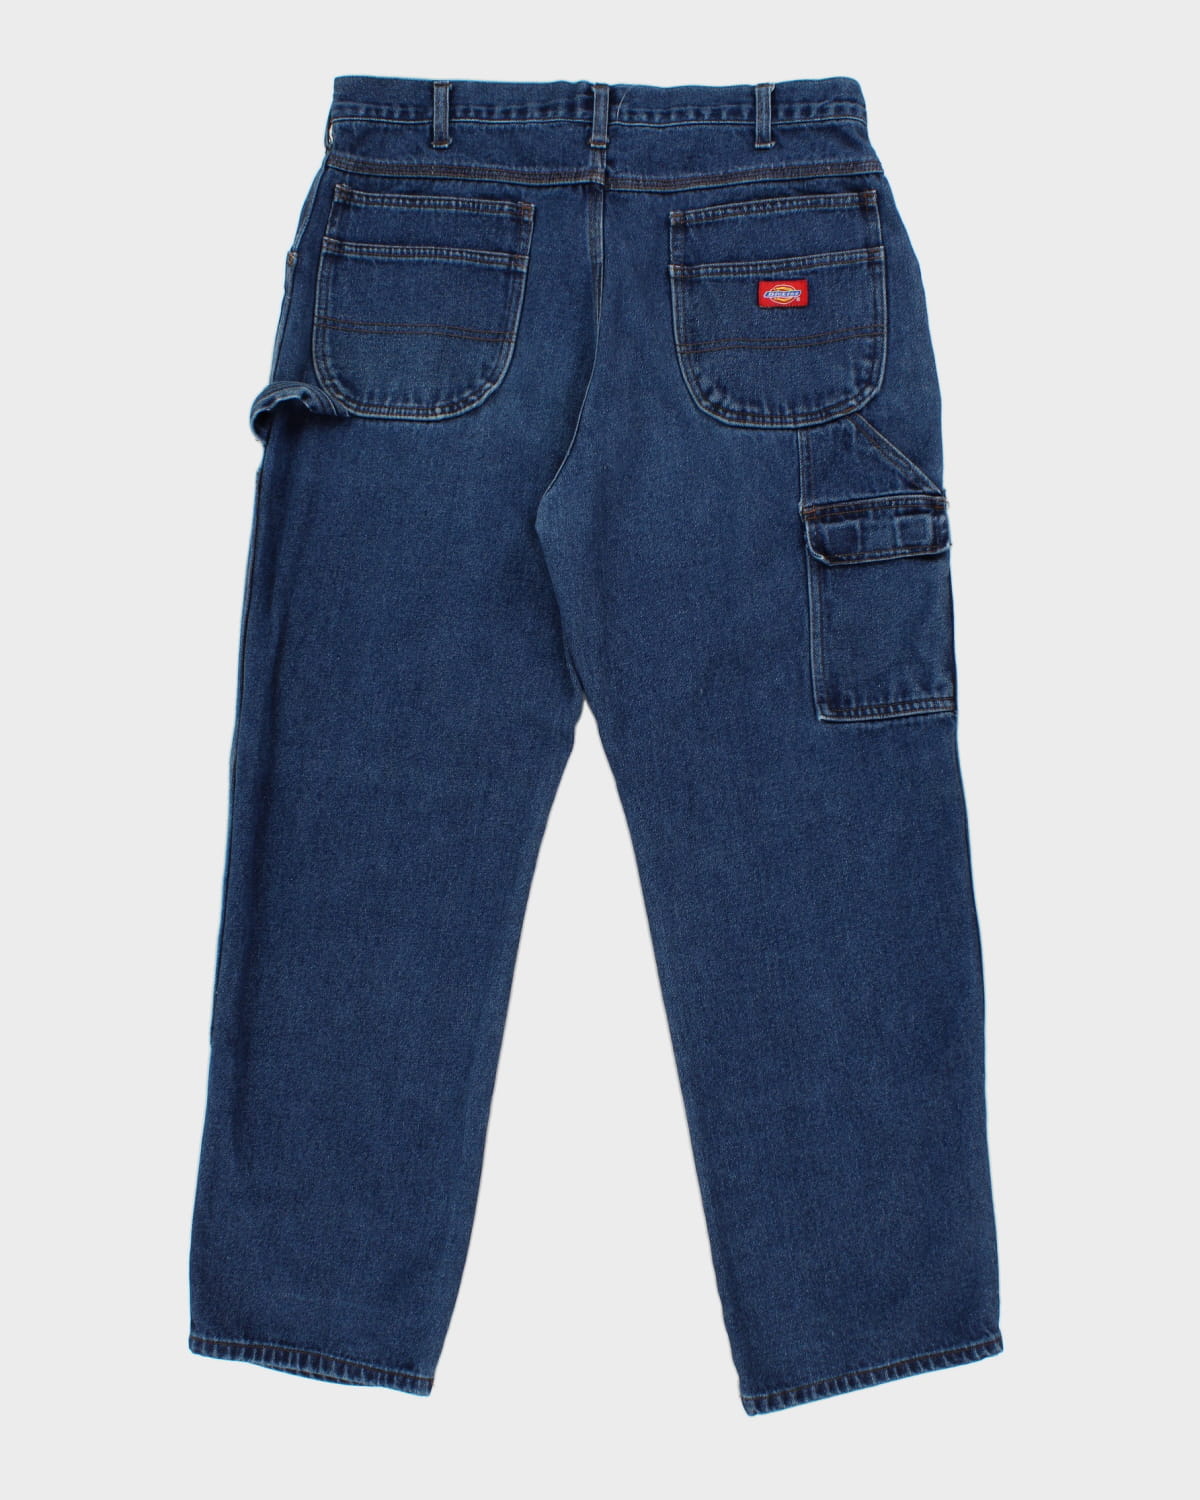 Dickies Dark Wash Carpenter Jeans - W36 L30